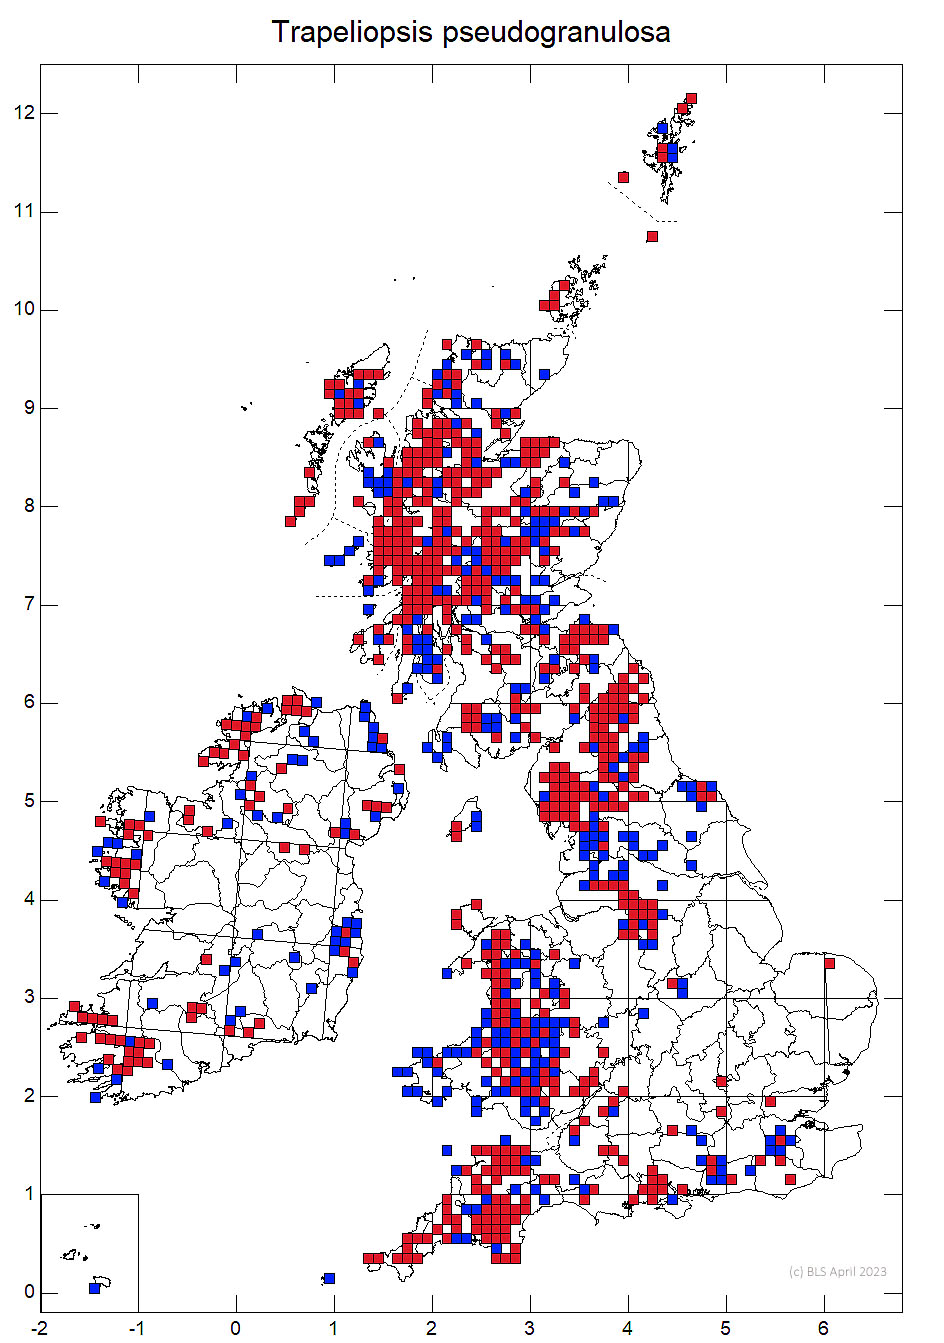 Trapeliopsis pseudogranulosa 10km sq distribution map